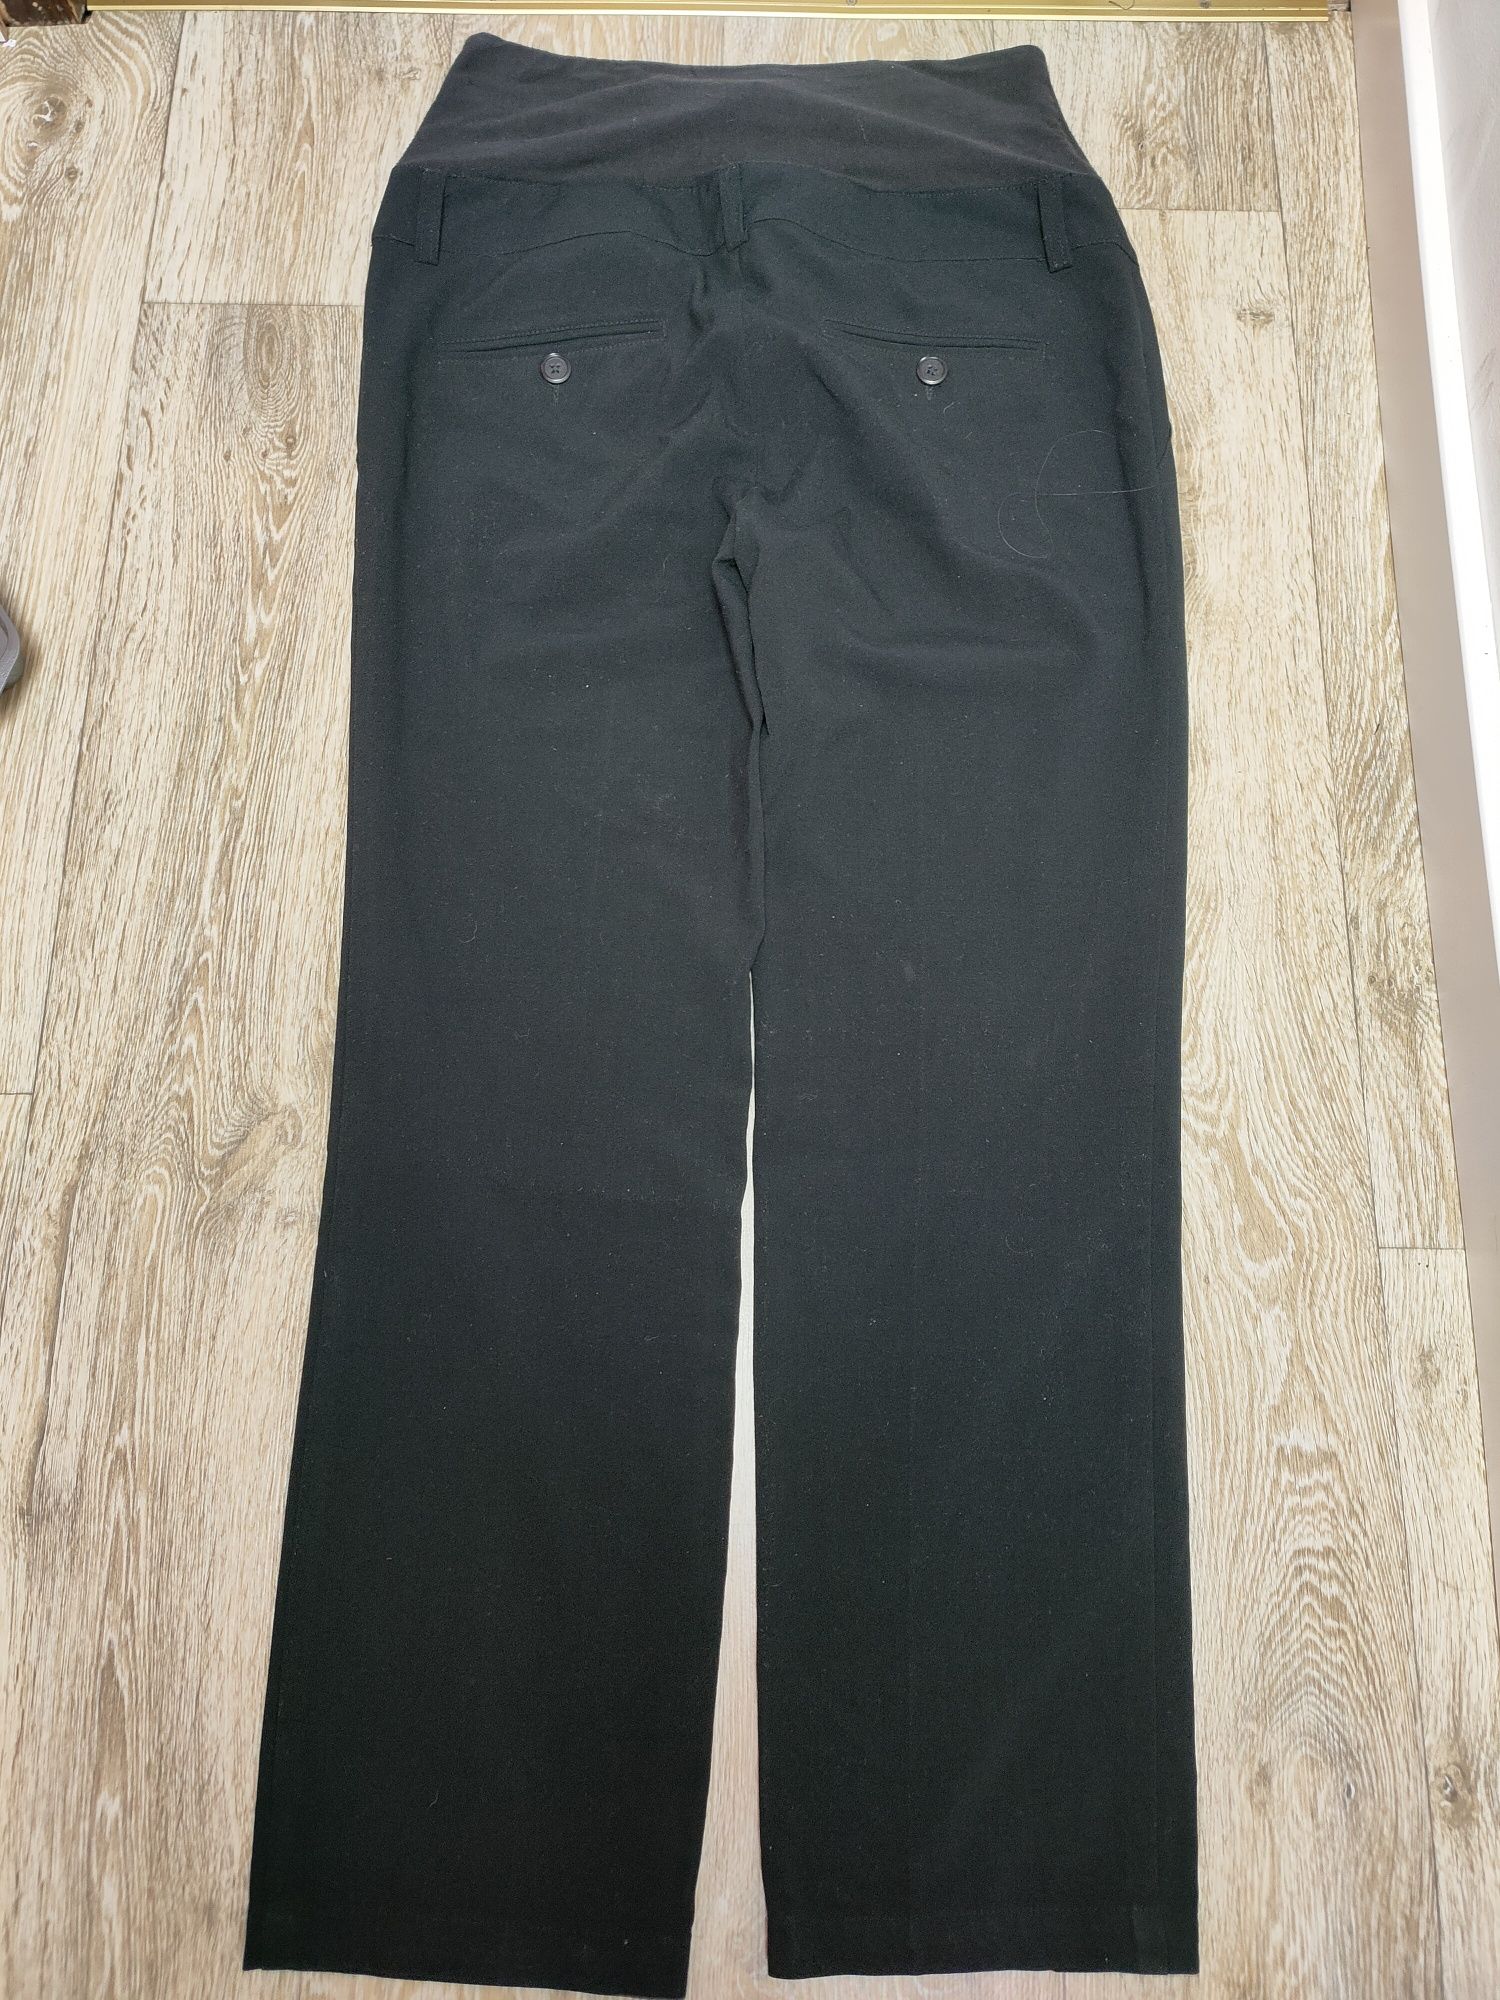 Spodnie ciążowe materiałowe czarne czerń H&M mama 38 M eleganckie